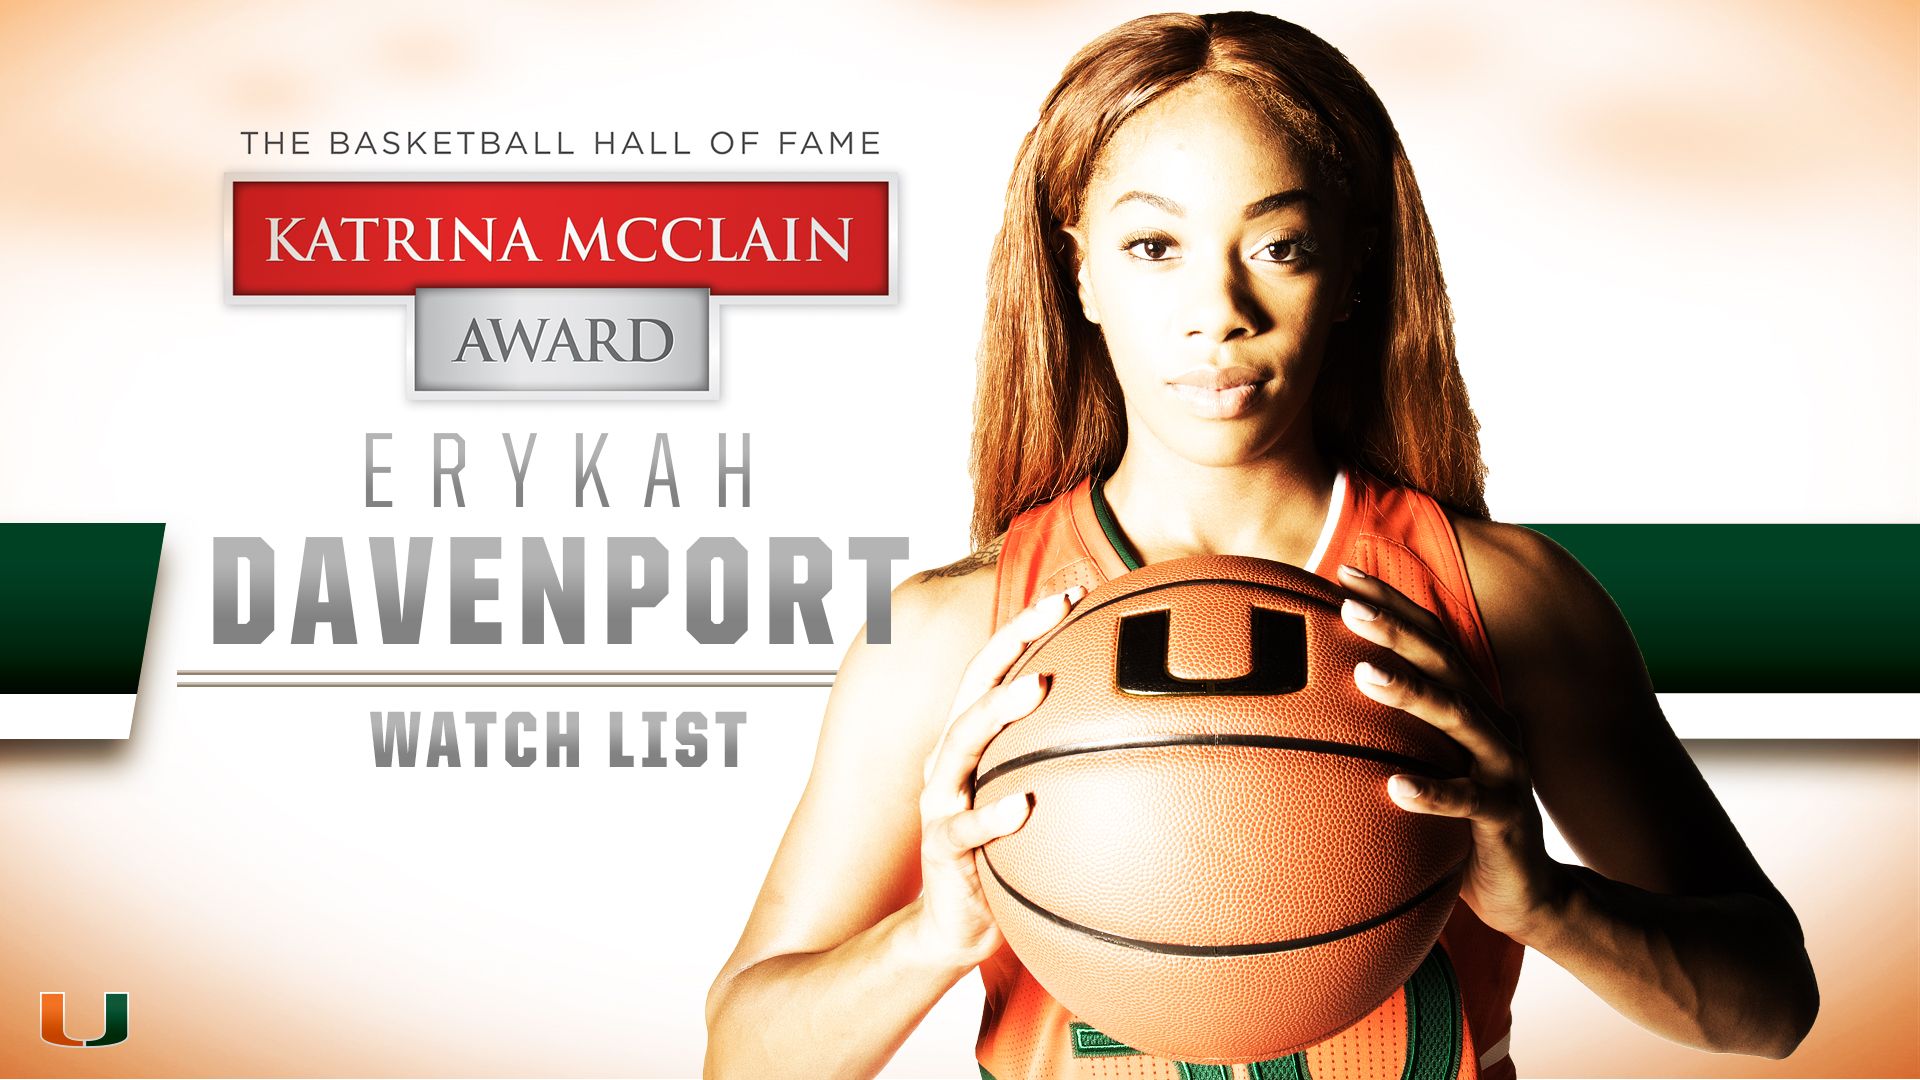 Davenport on Katrina McClain Award Watch List